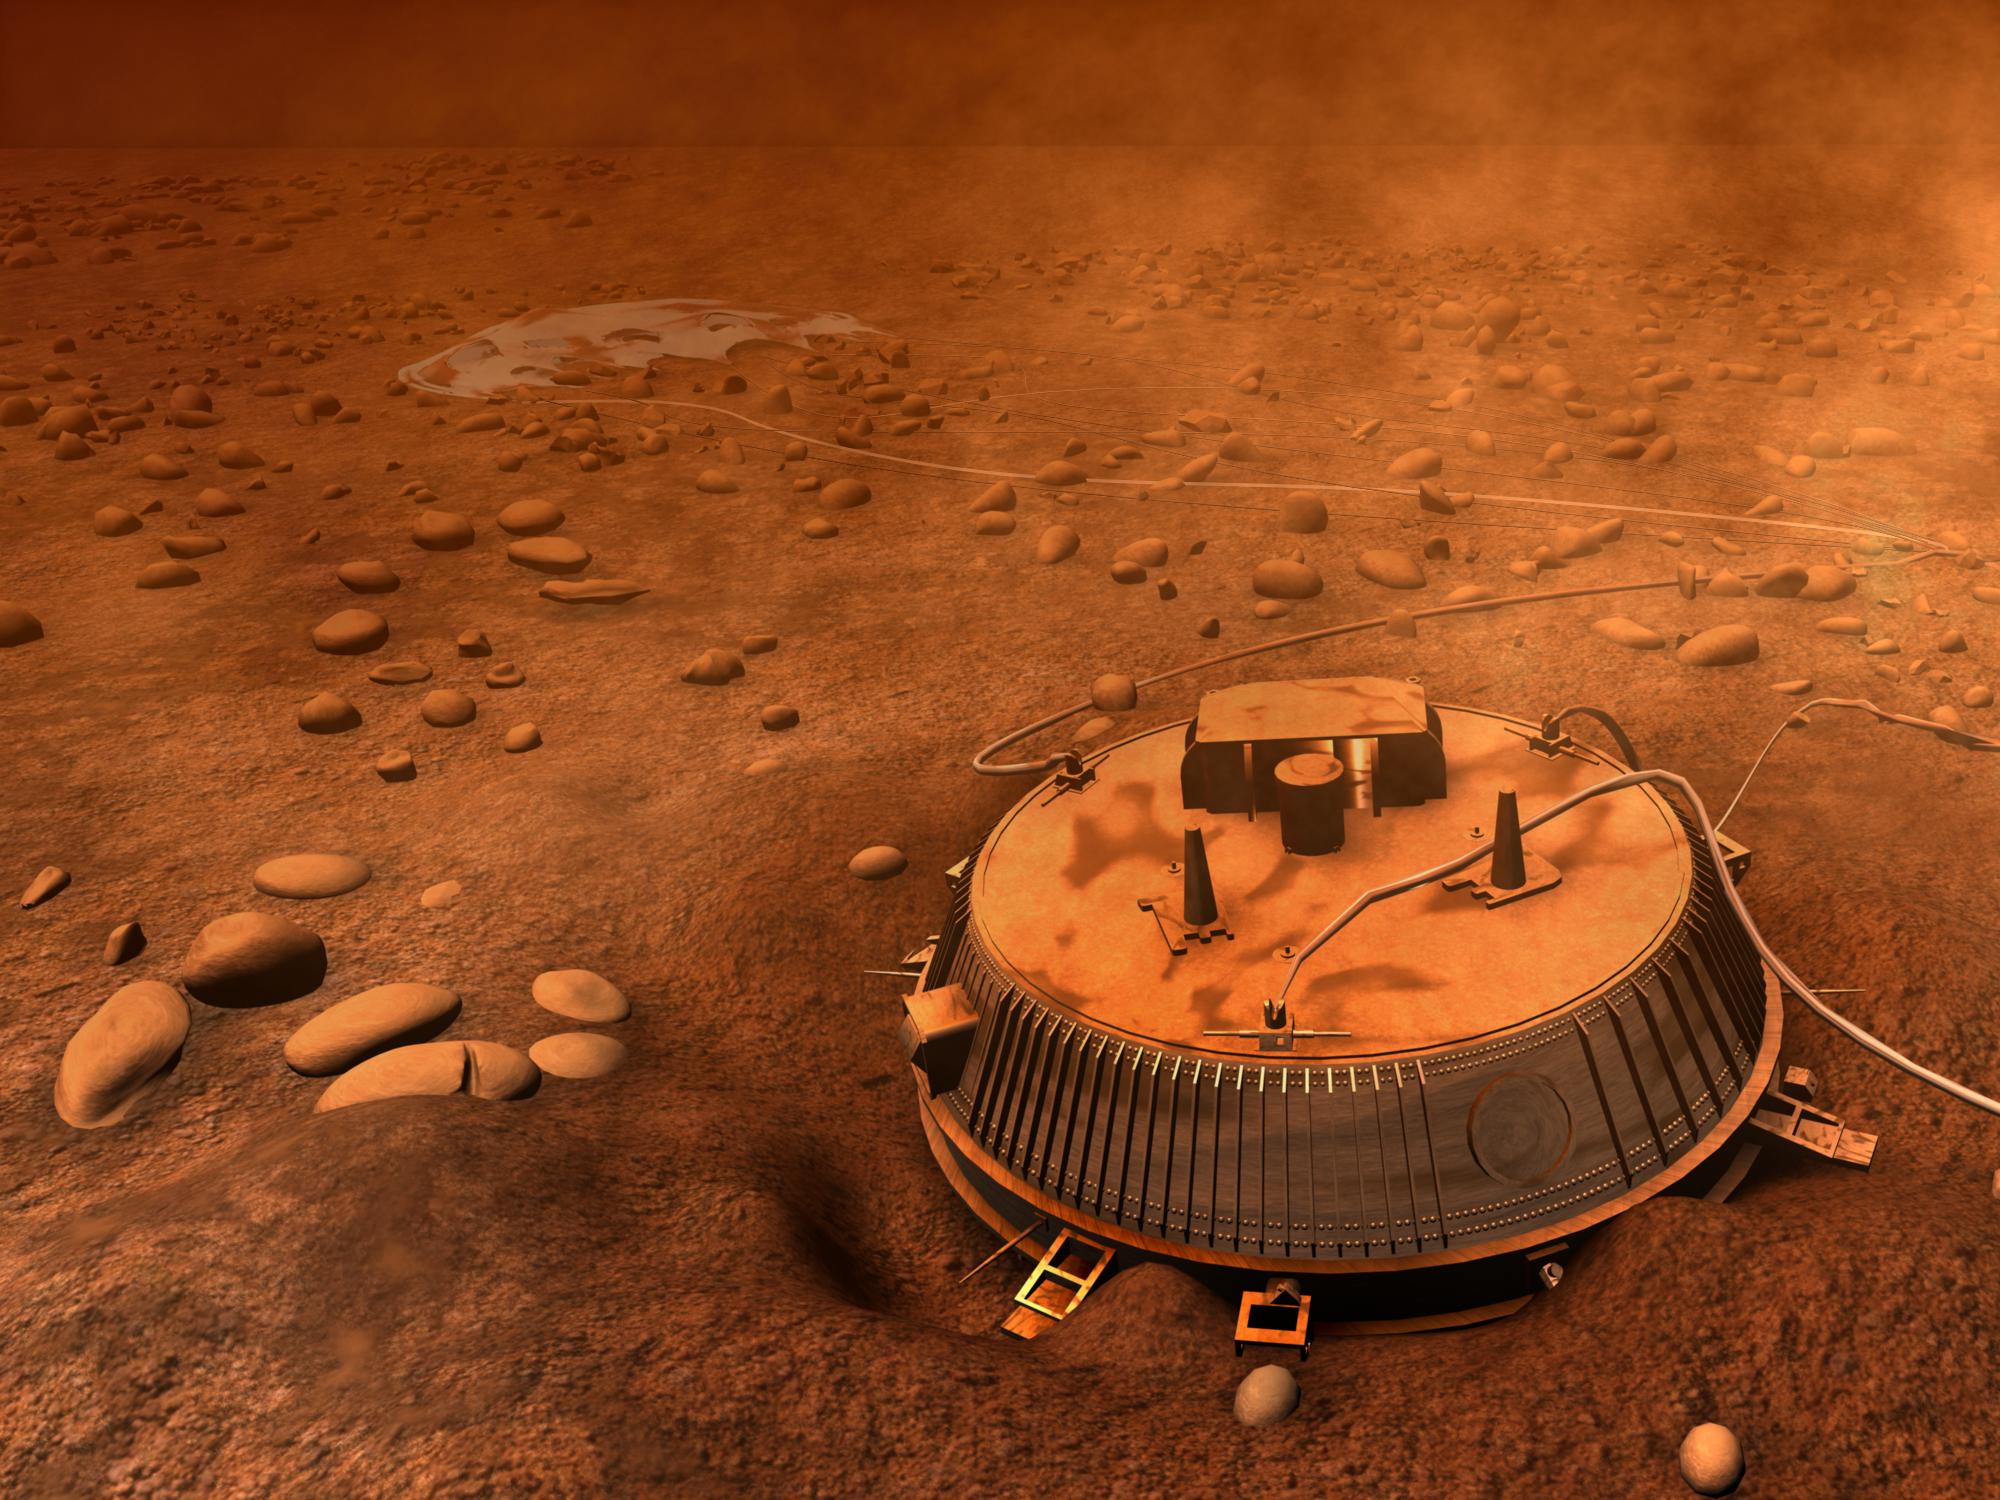 Vue d\'artiste de Huygens sur Titan